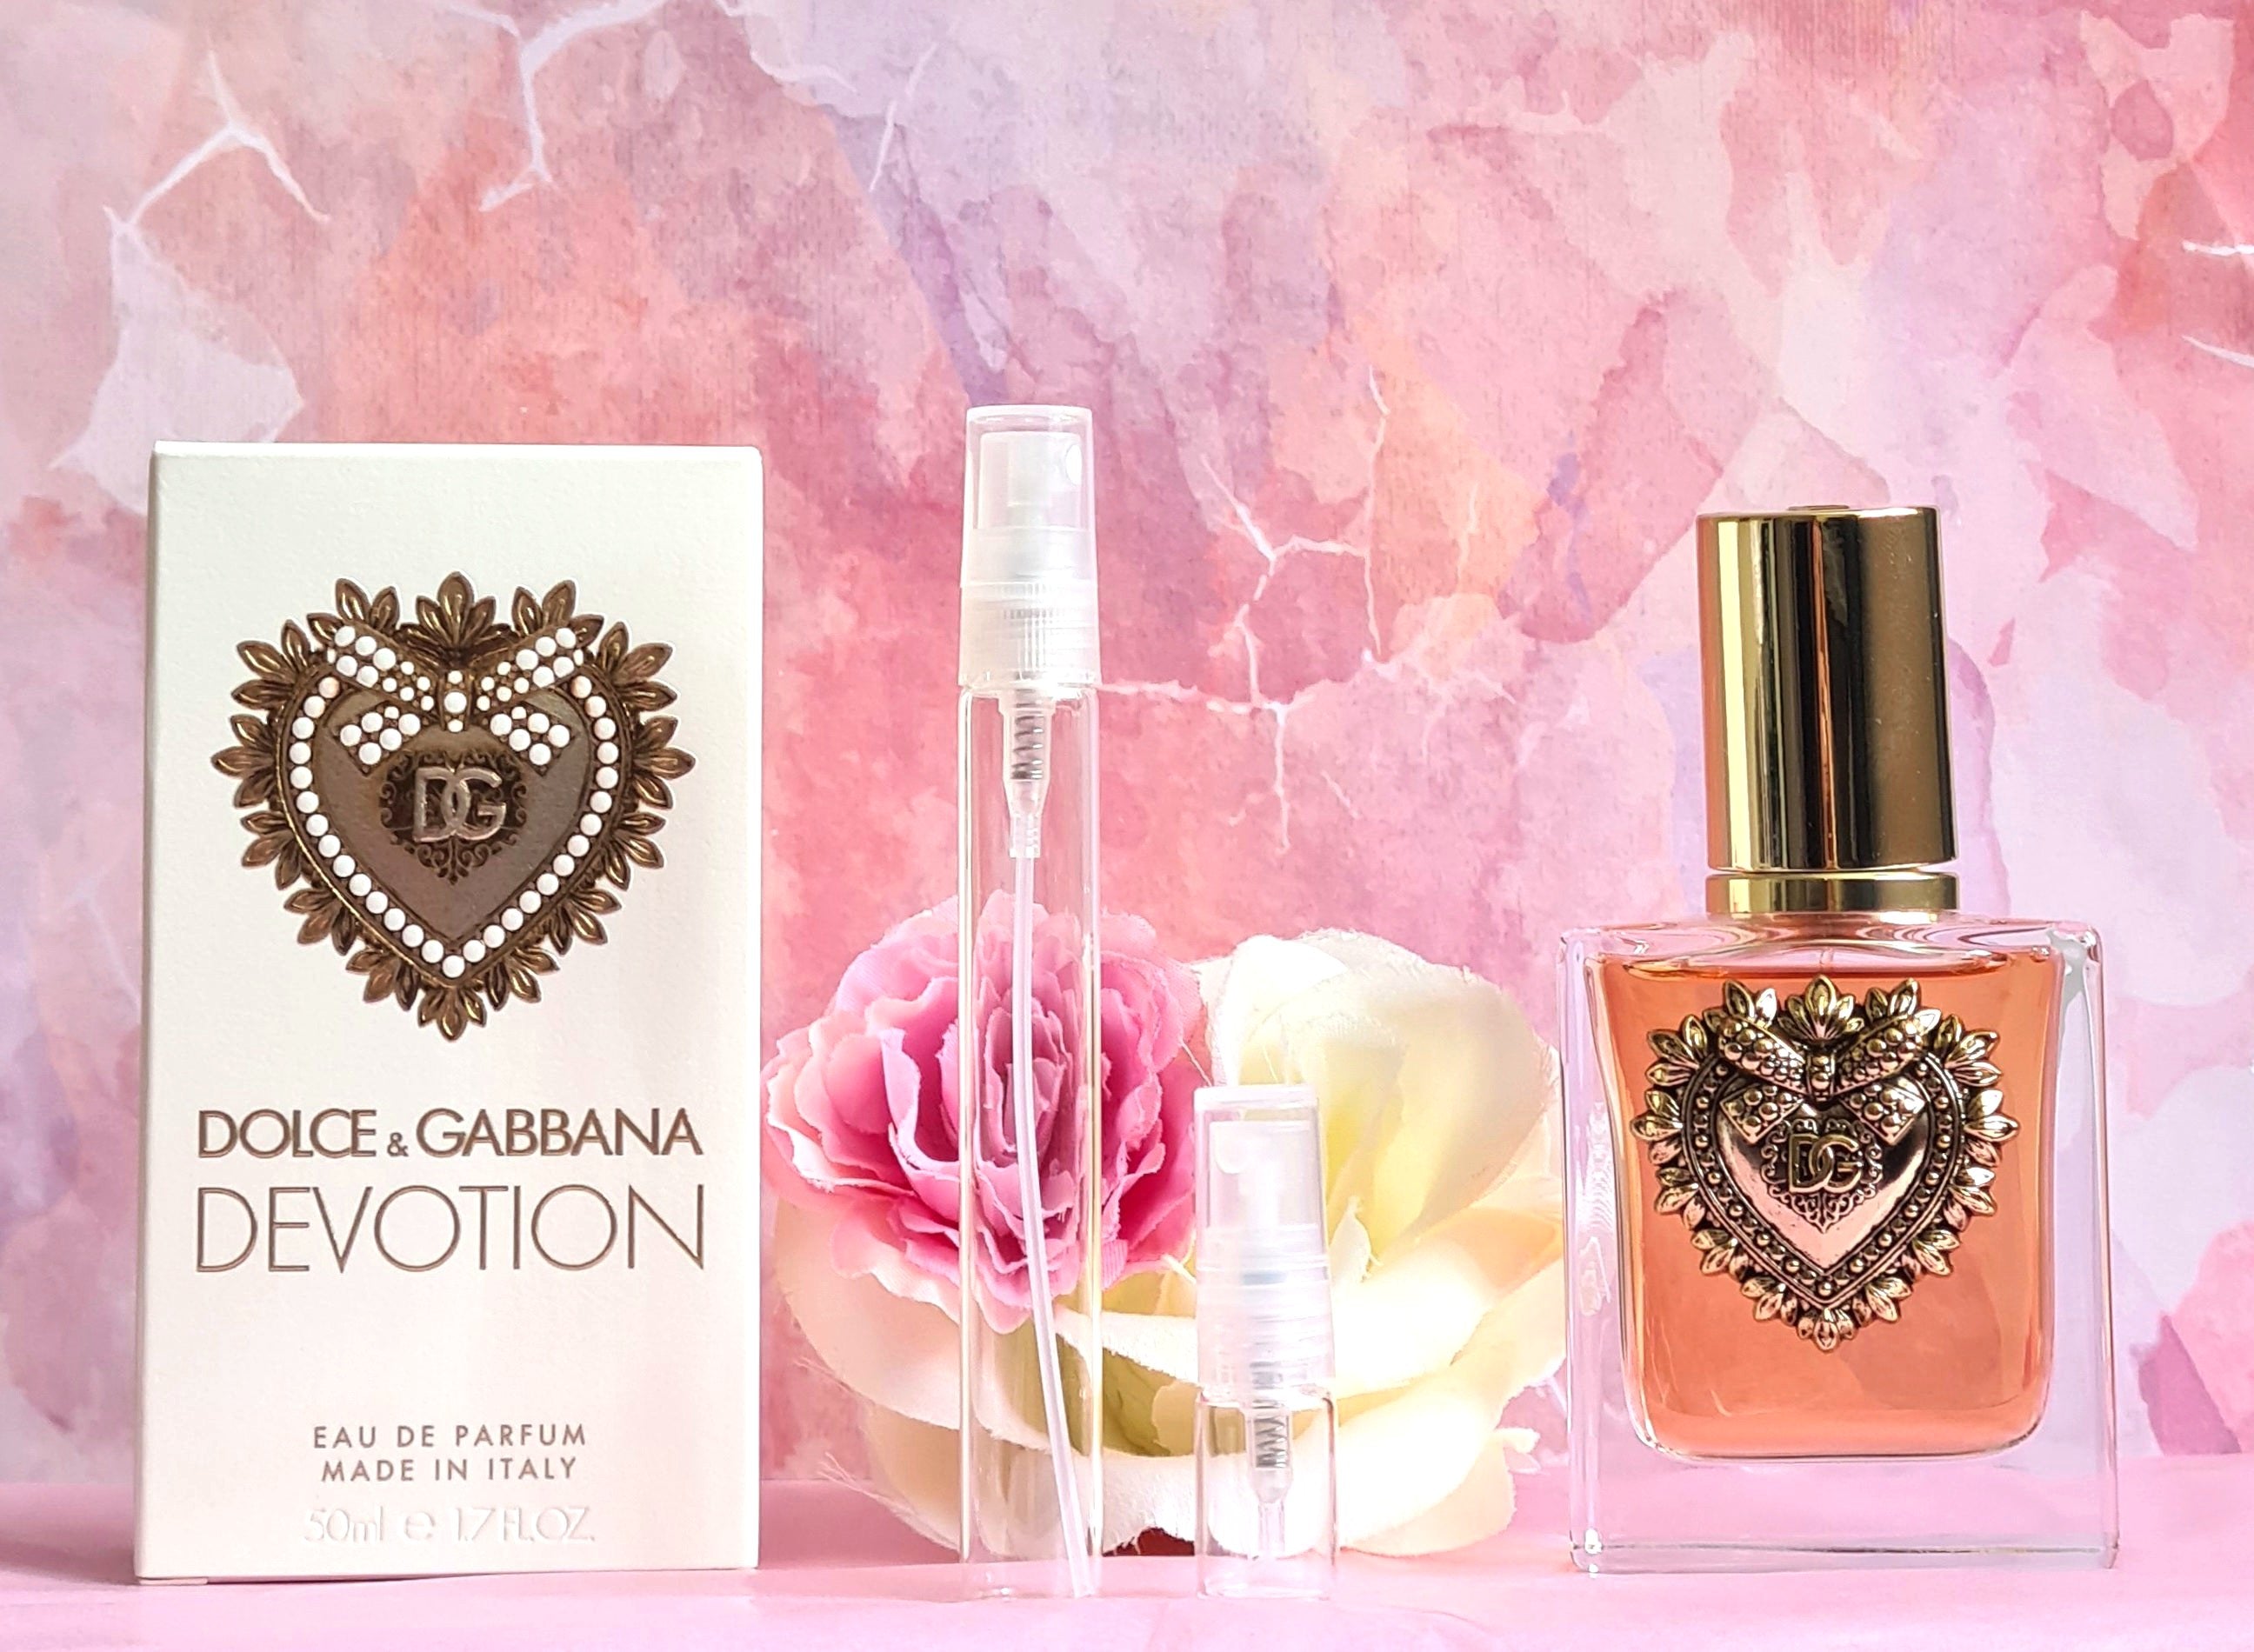 Dolce & Gabbana Devotion Perfume Samples – Thewayfarerscents